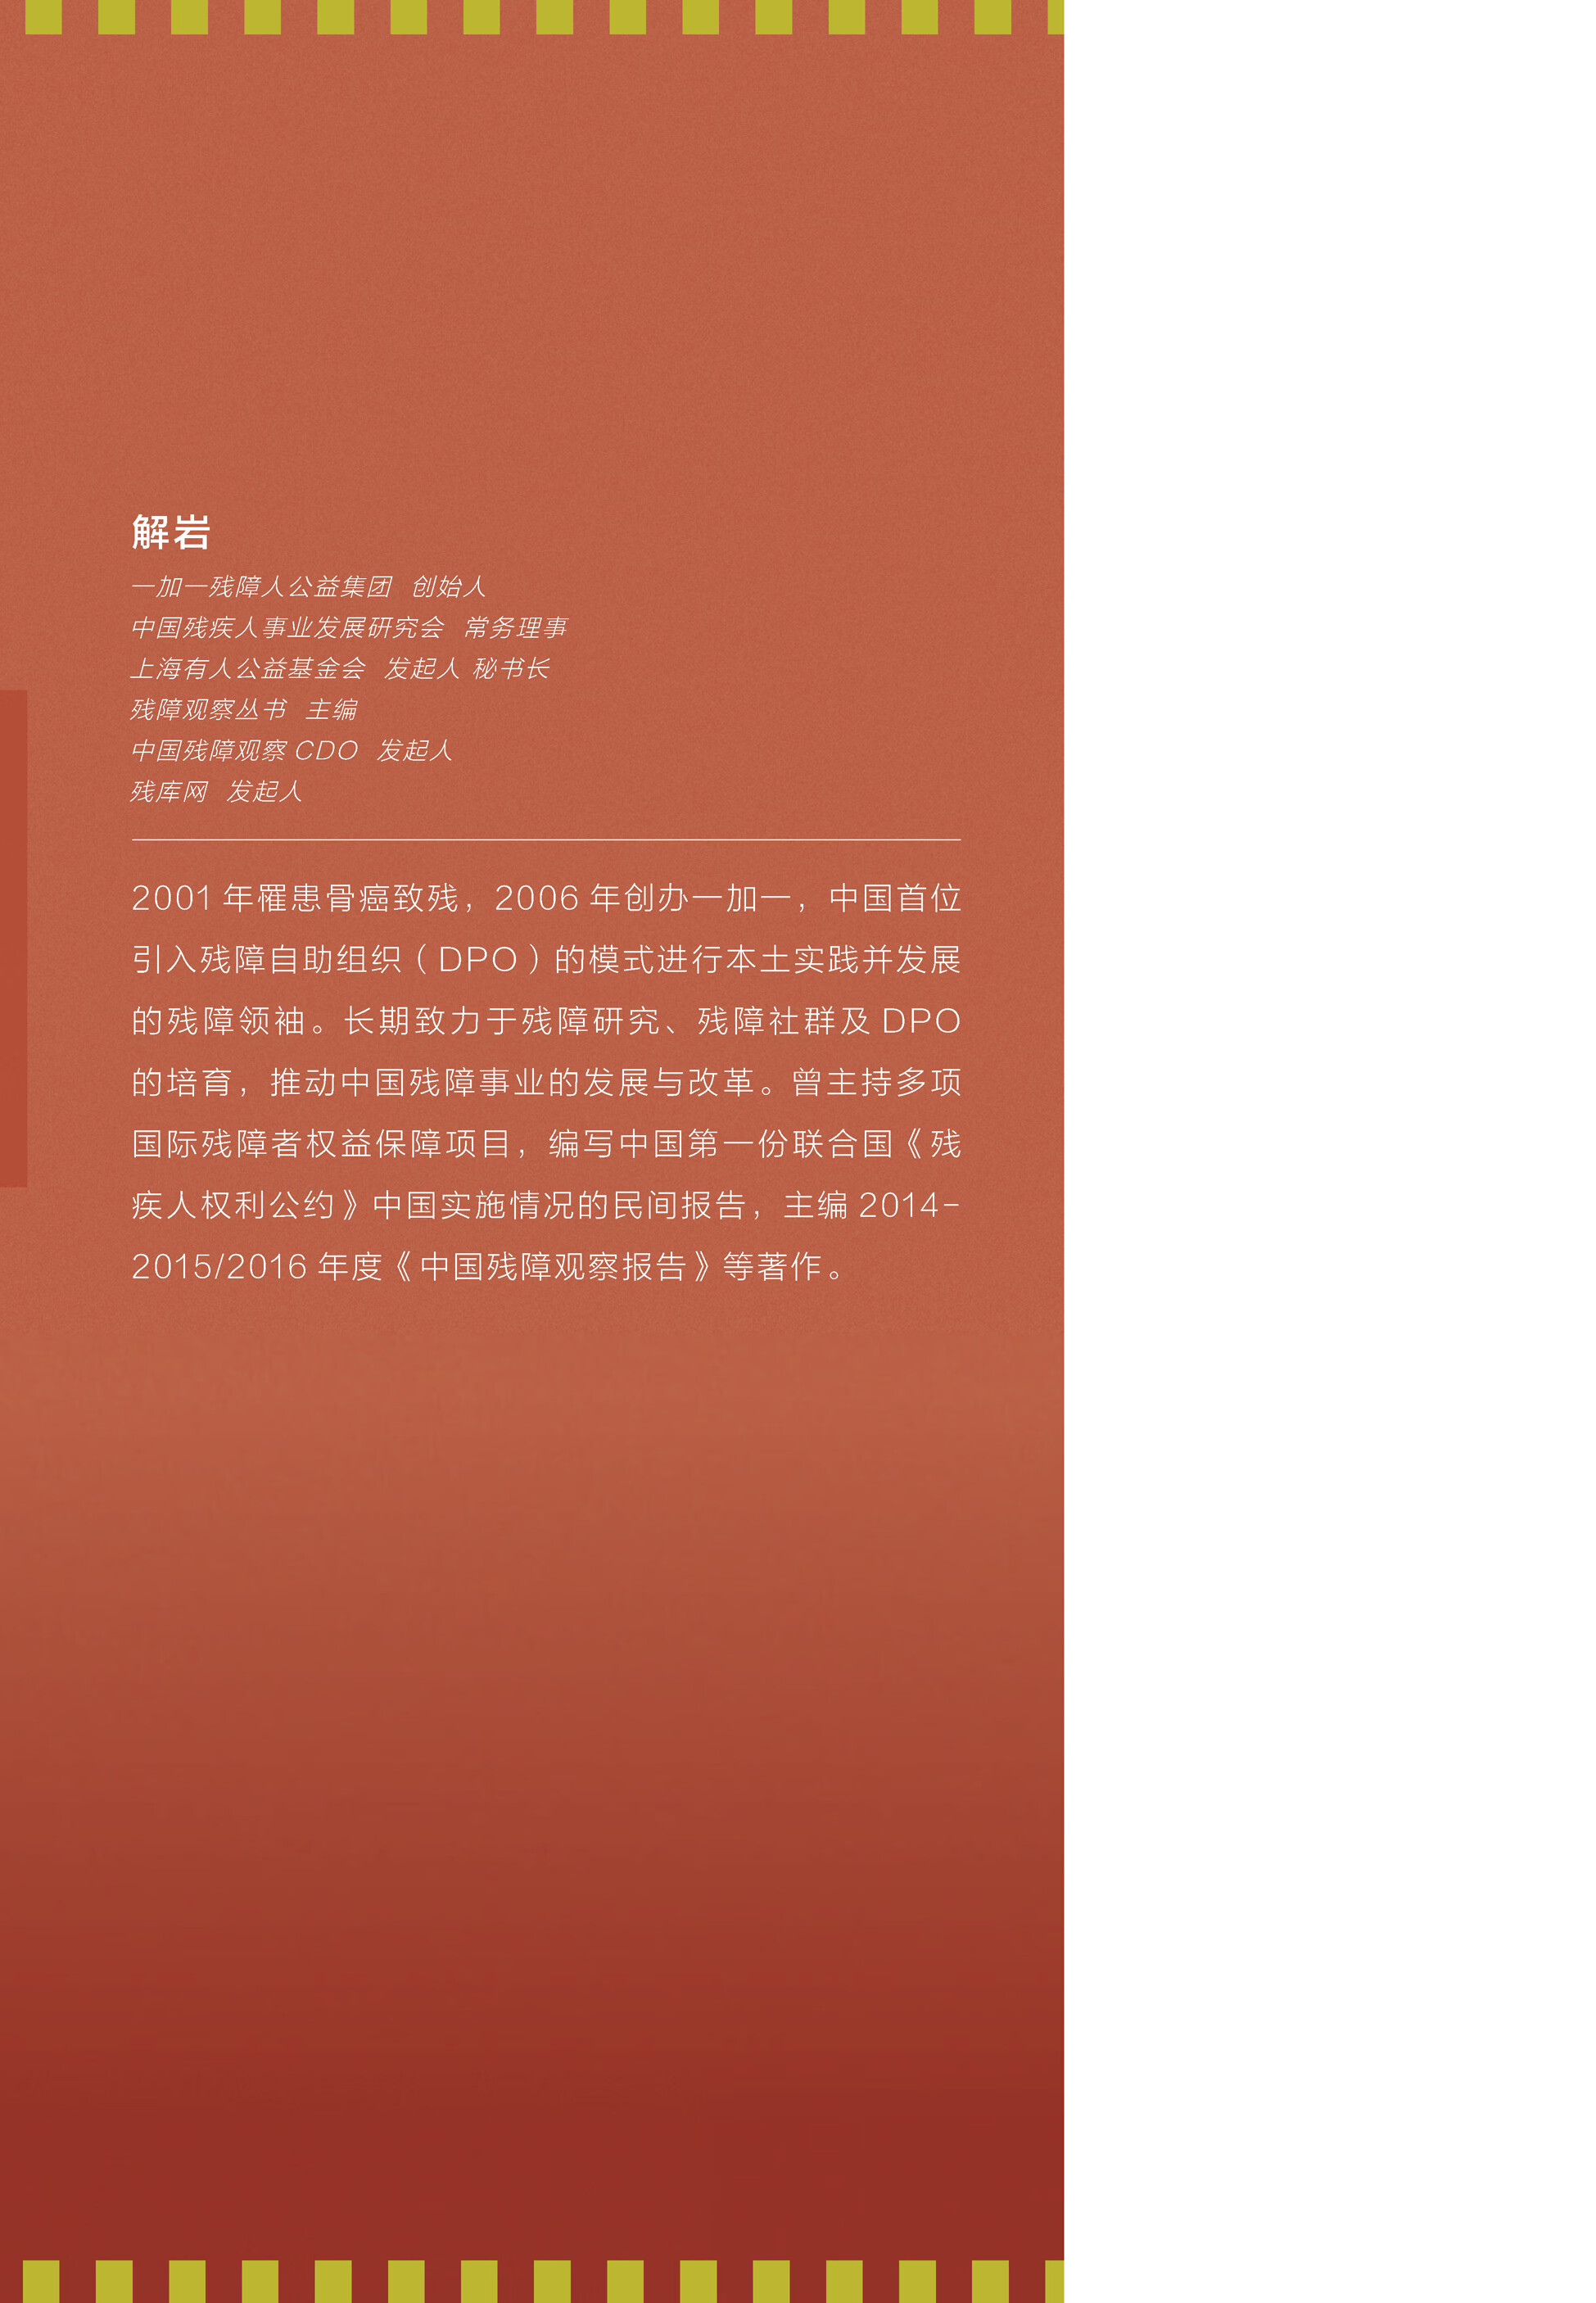 中国残障观察报告（2018）pdf/doc/txt格式电子书下载